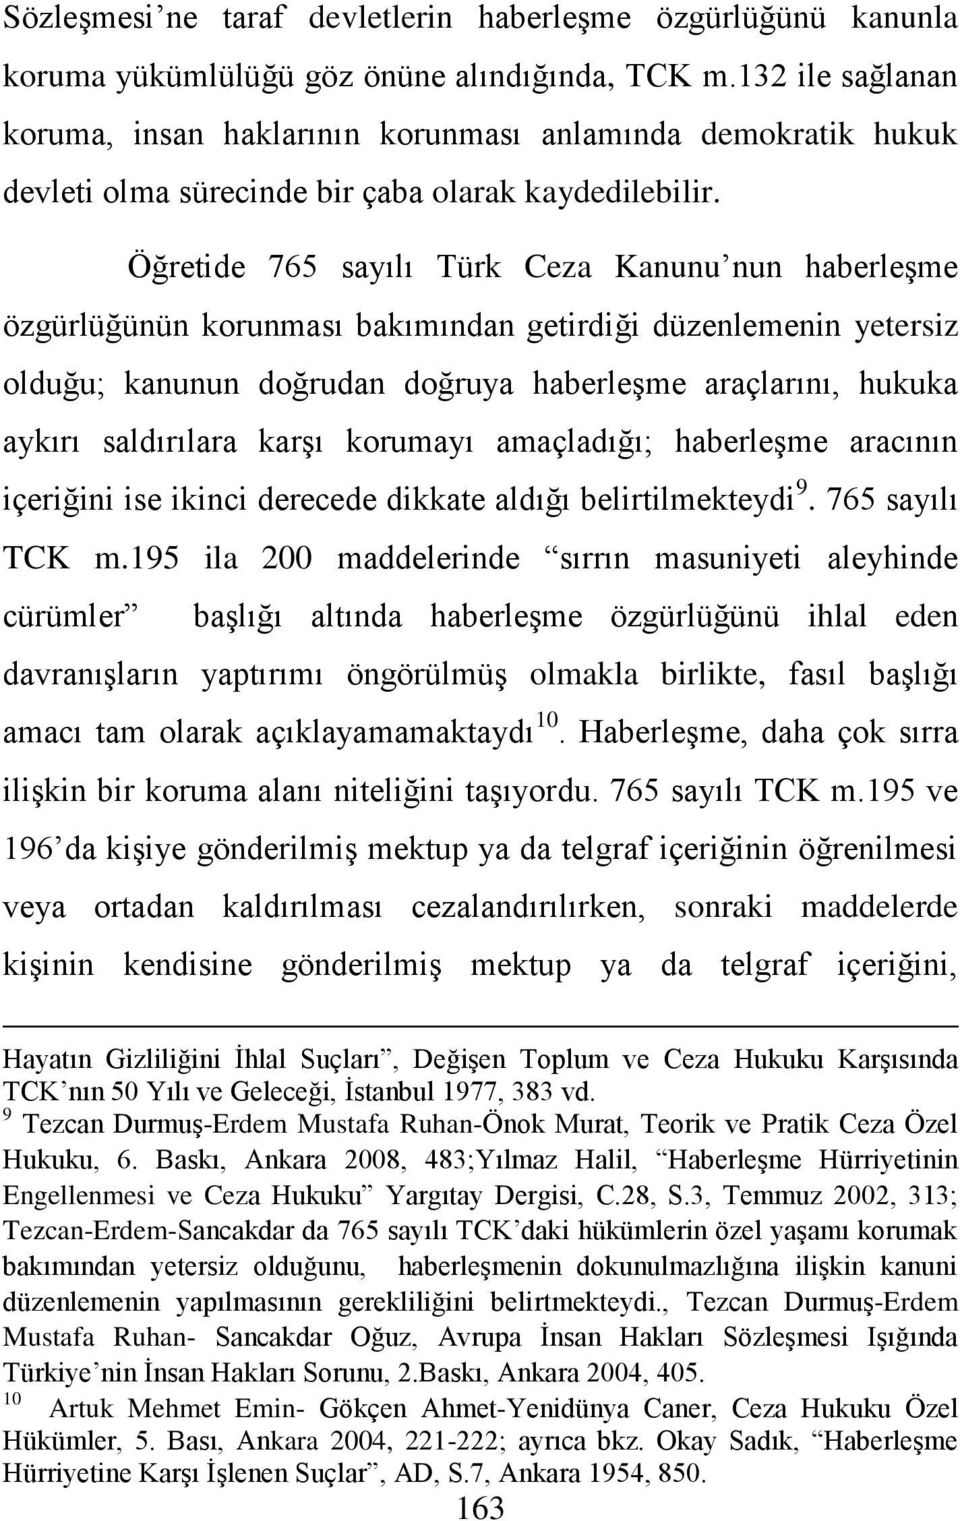 Öğretide 765 sayılı Türk Ceza Kanunu nun haberleşme özgürlüğünün korunması bakımından getirdiği düzenlemenin yetersiz olduğu; kanunun doğrudan doğruya haberleşme araçlarını, hukuka aykırı saldırılara